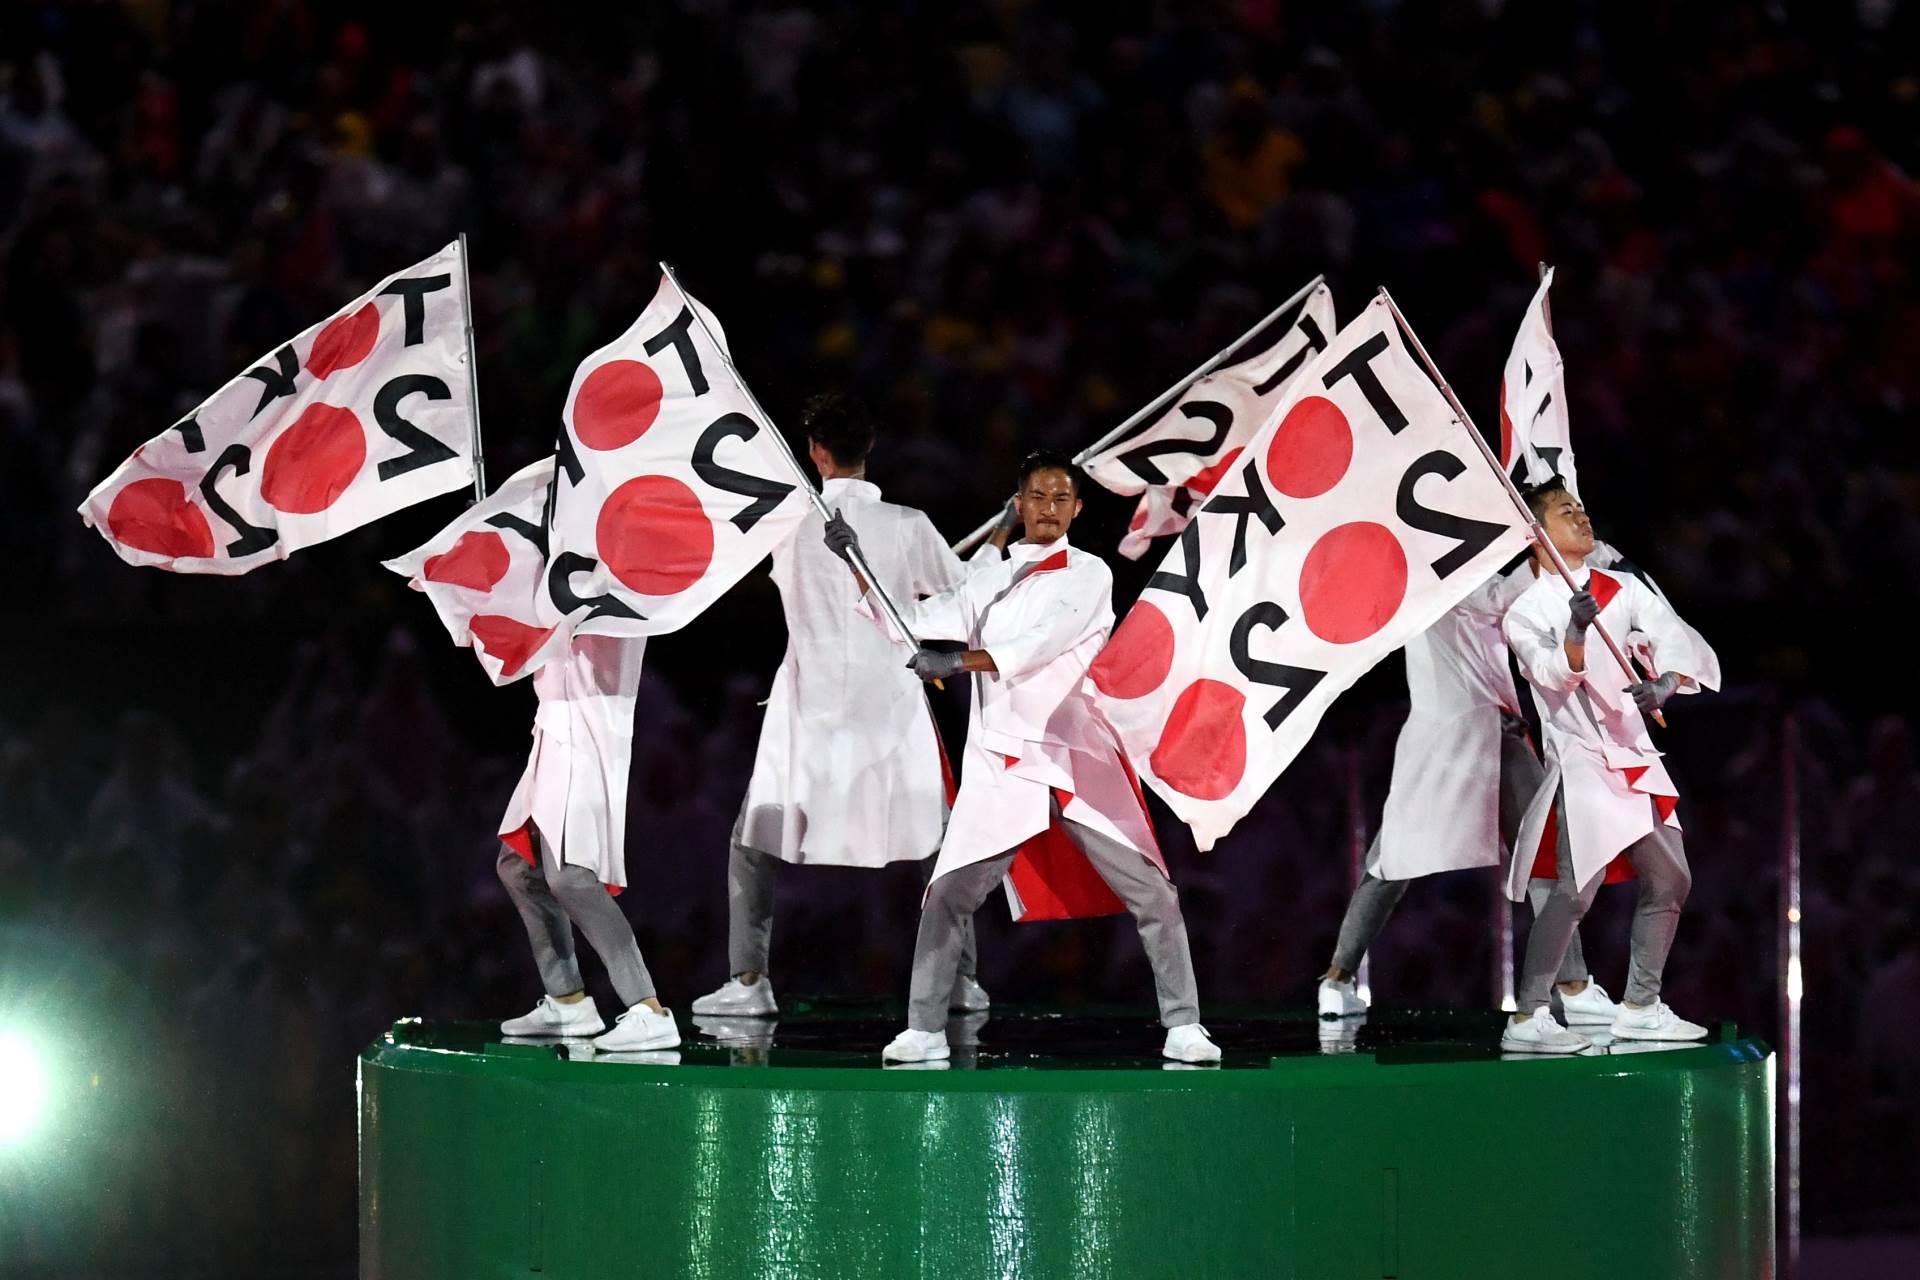  Građani Tokija protiv Olimpijskih igara 